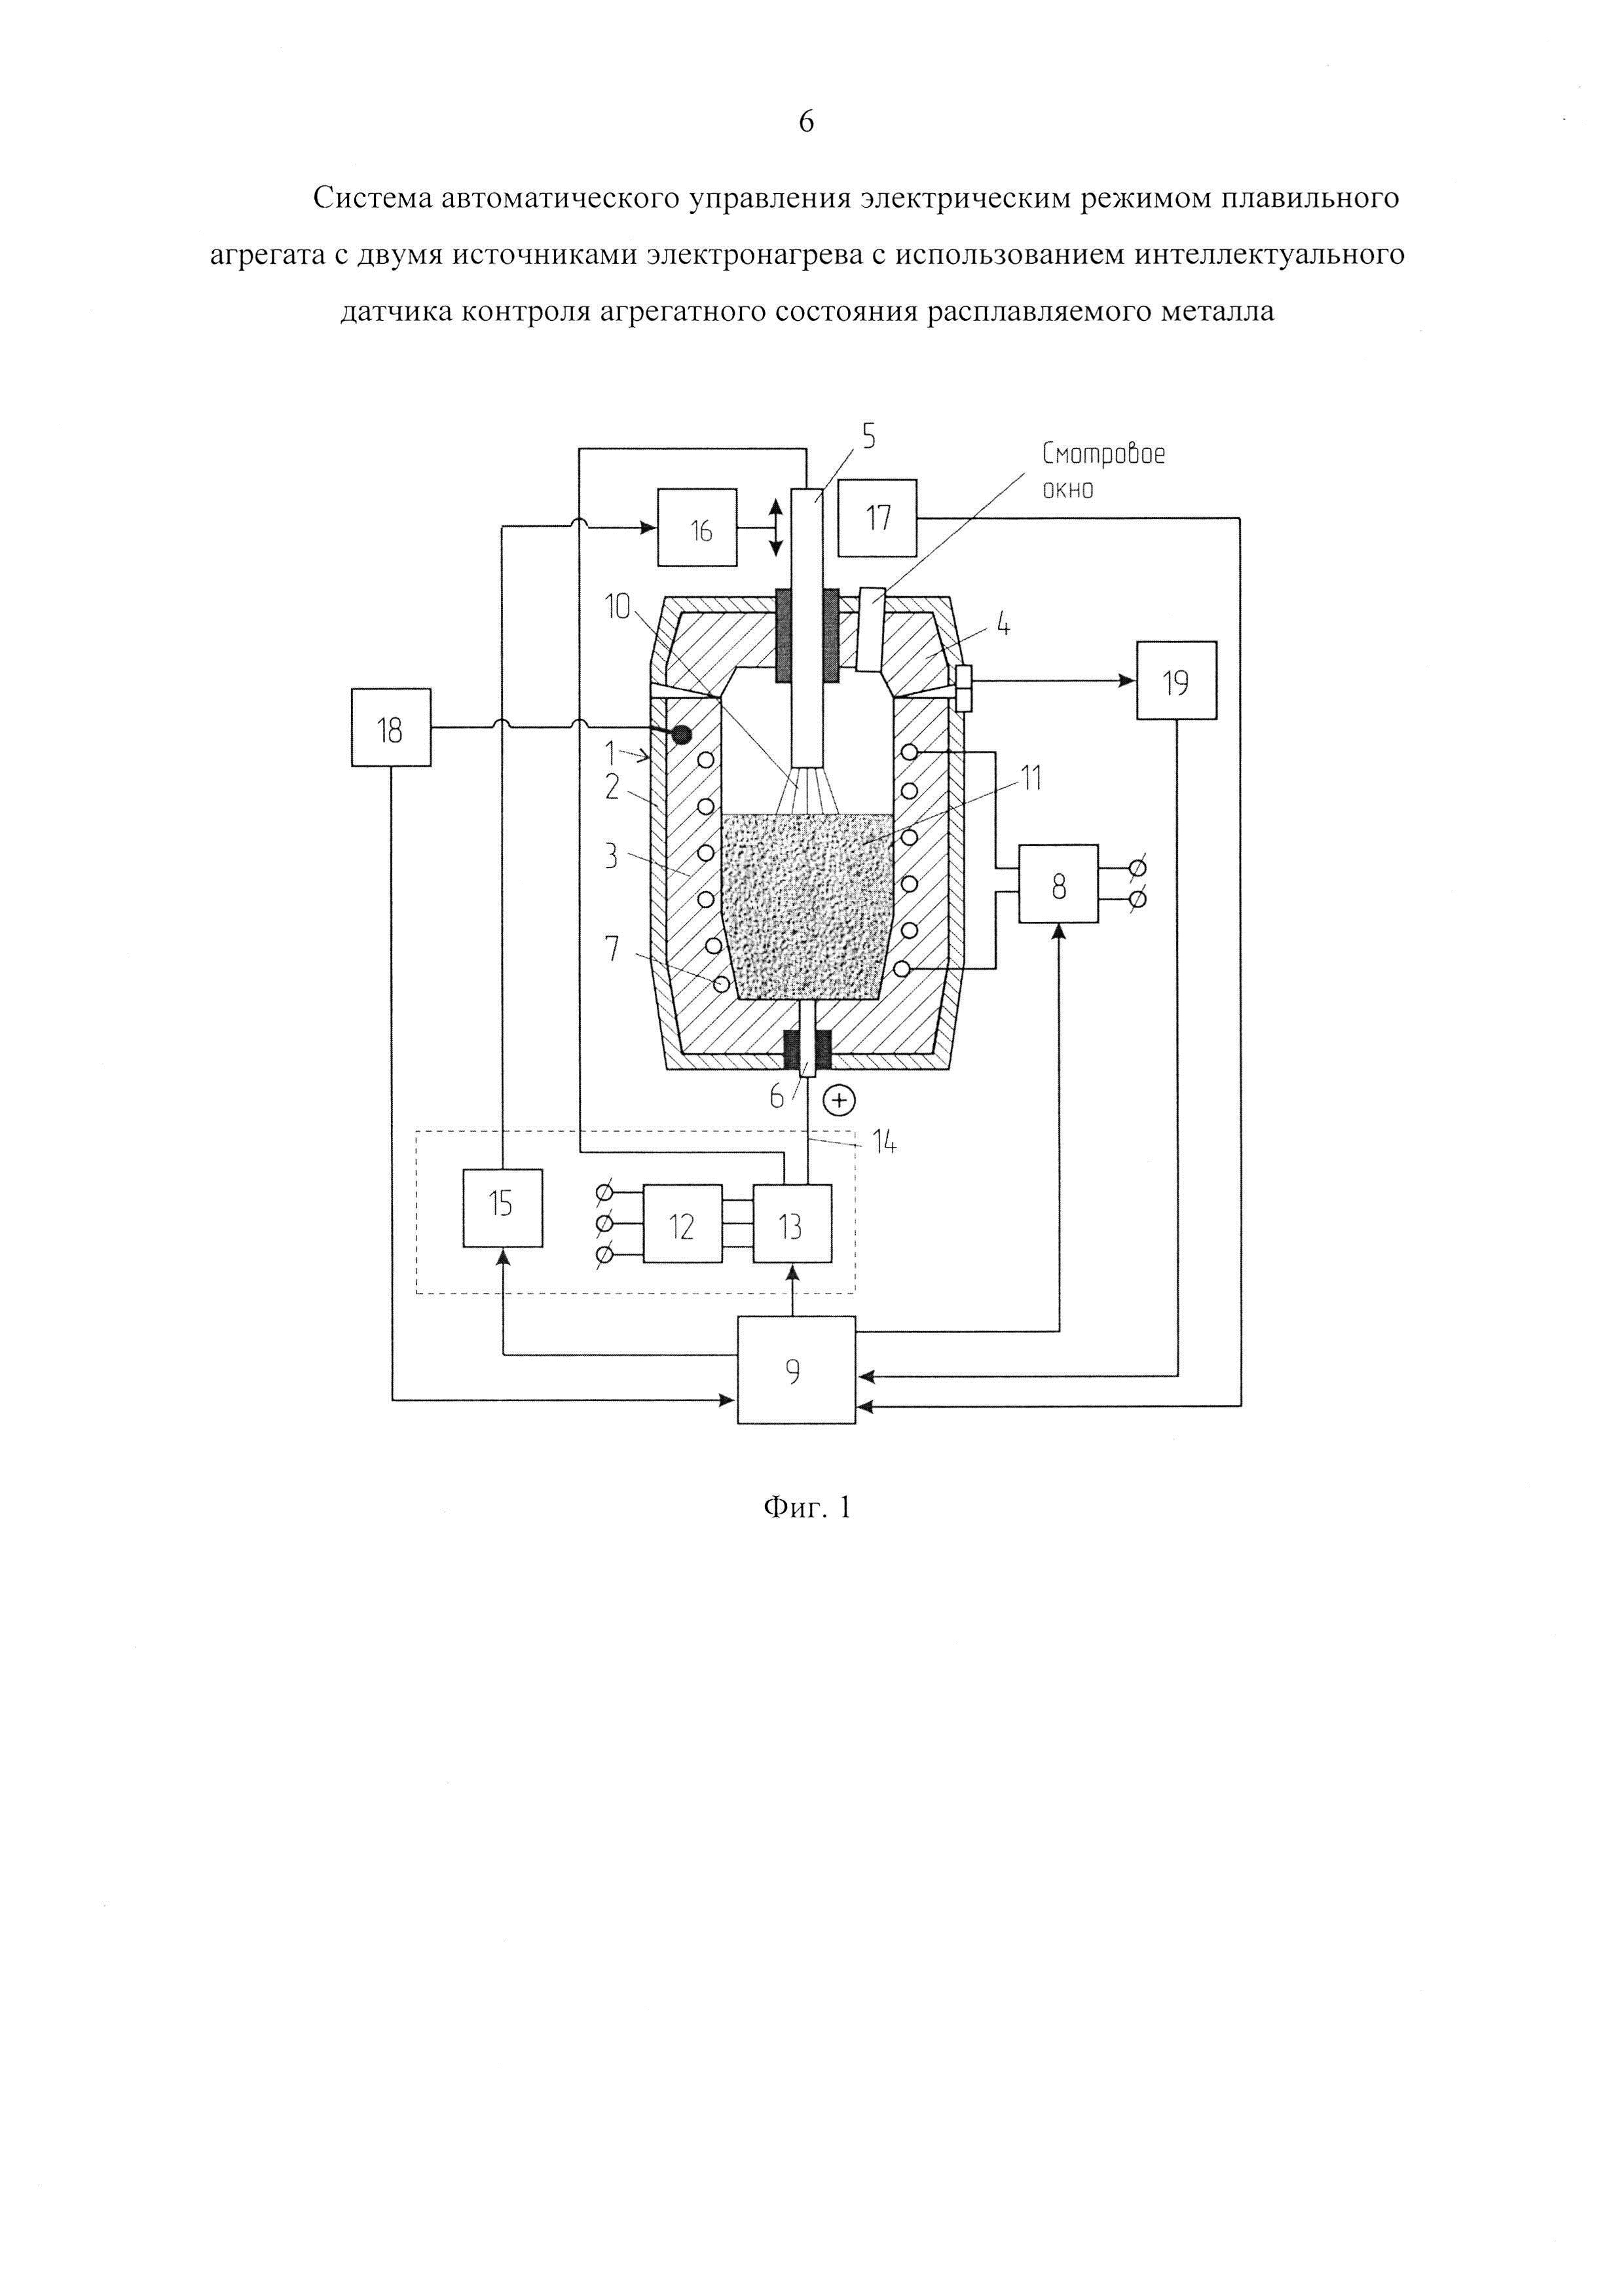 Система автоматического управления электрическим режимом плавильного агрегата с двумя источниками электронагрева с использованием интеллектуального датчика контроля агрегатного состояния расплавляемого металла